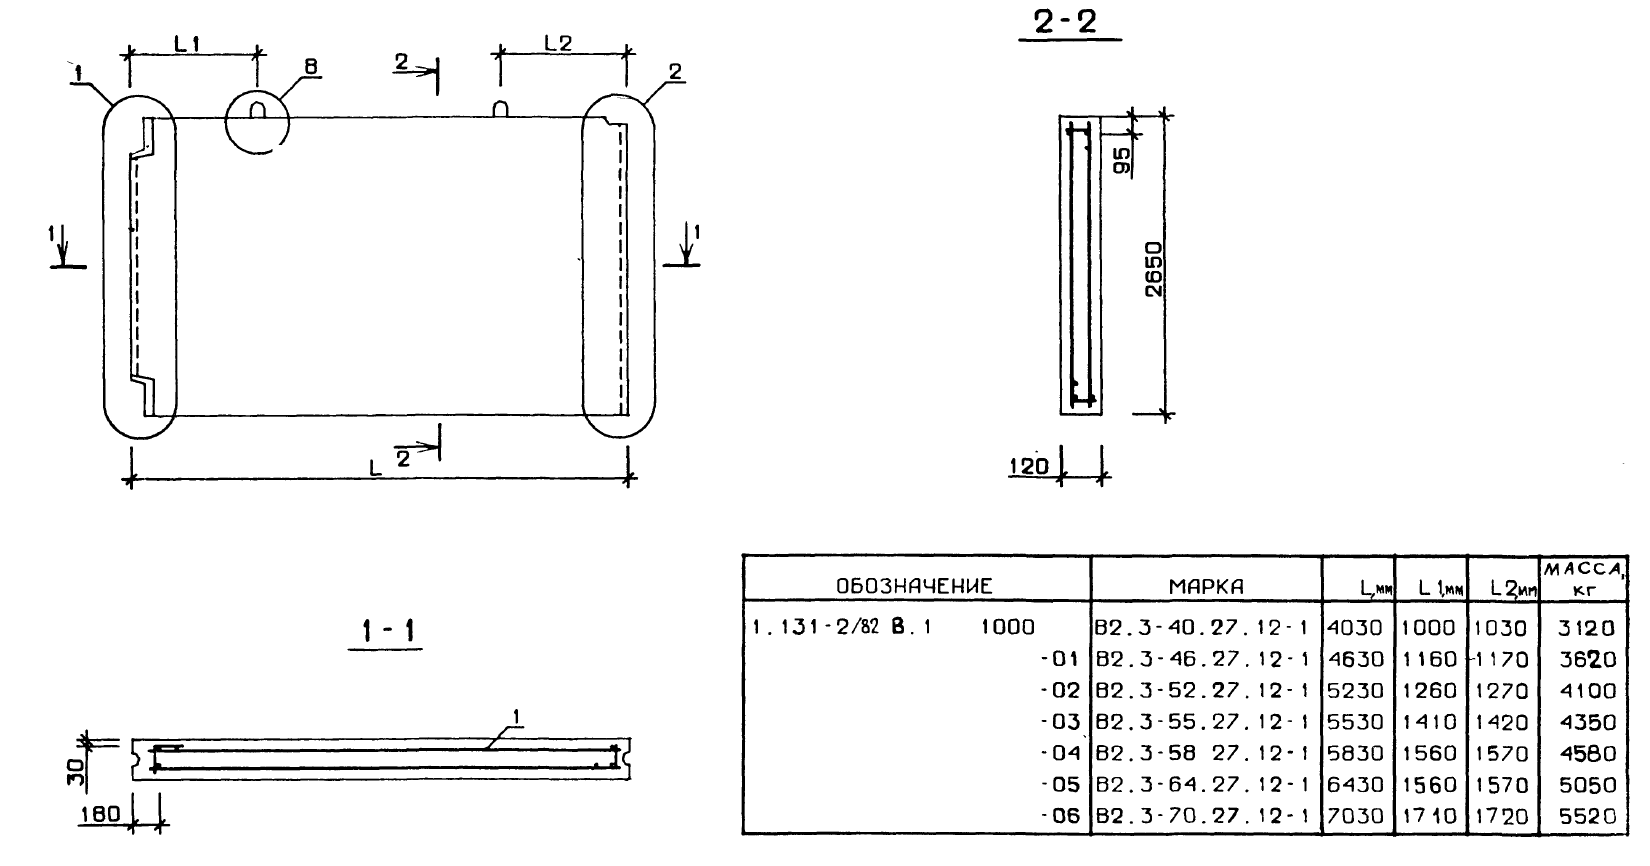 Внутренняя поперечная стеновая панель В2.3-40.27.12-1 серия 1.131-2/82